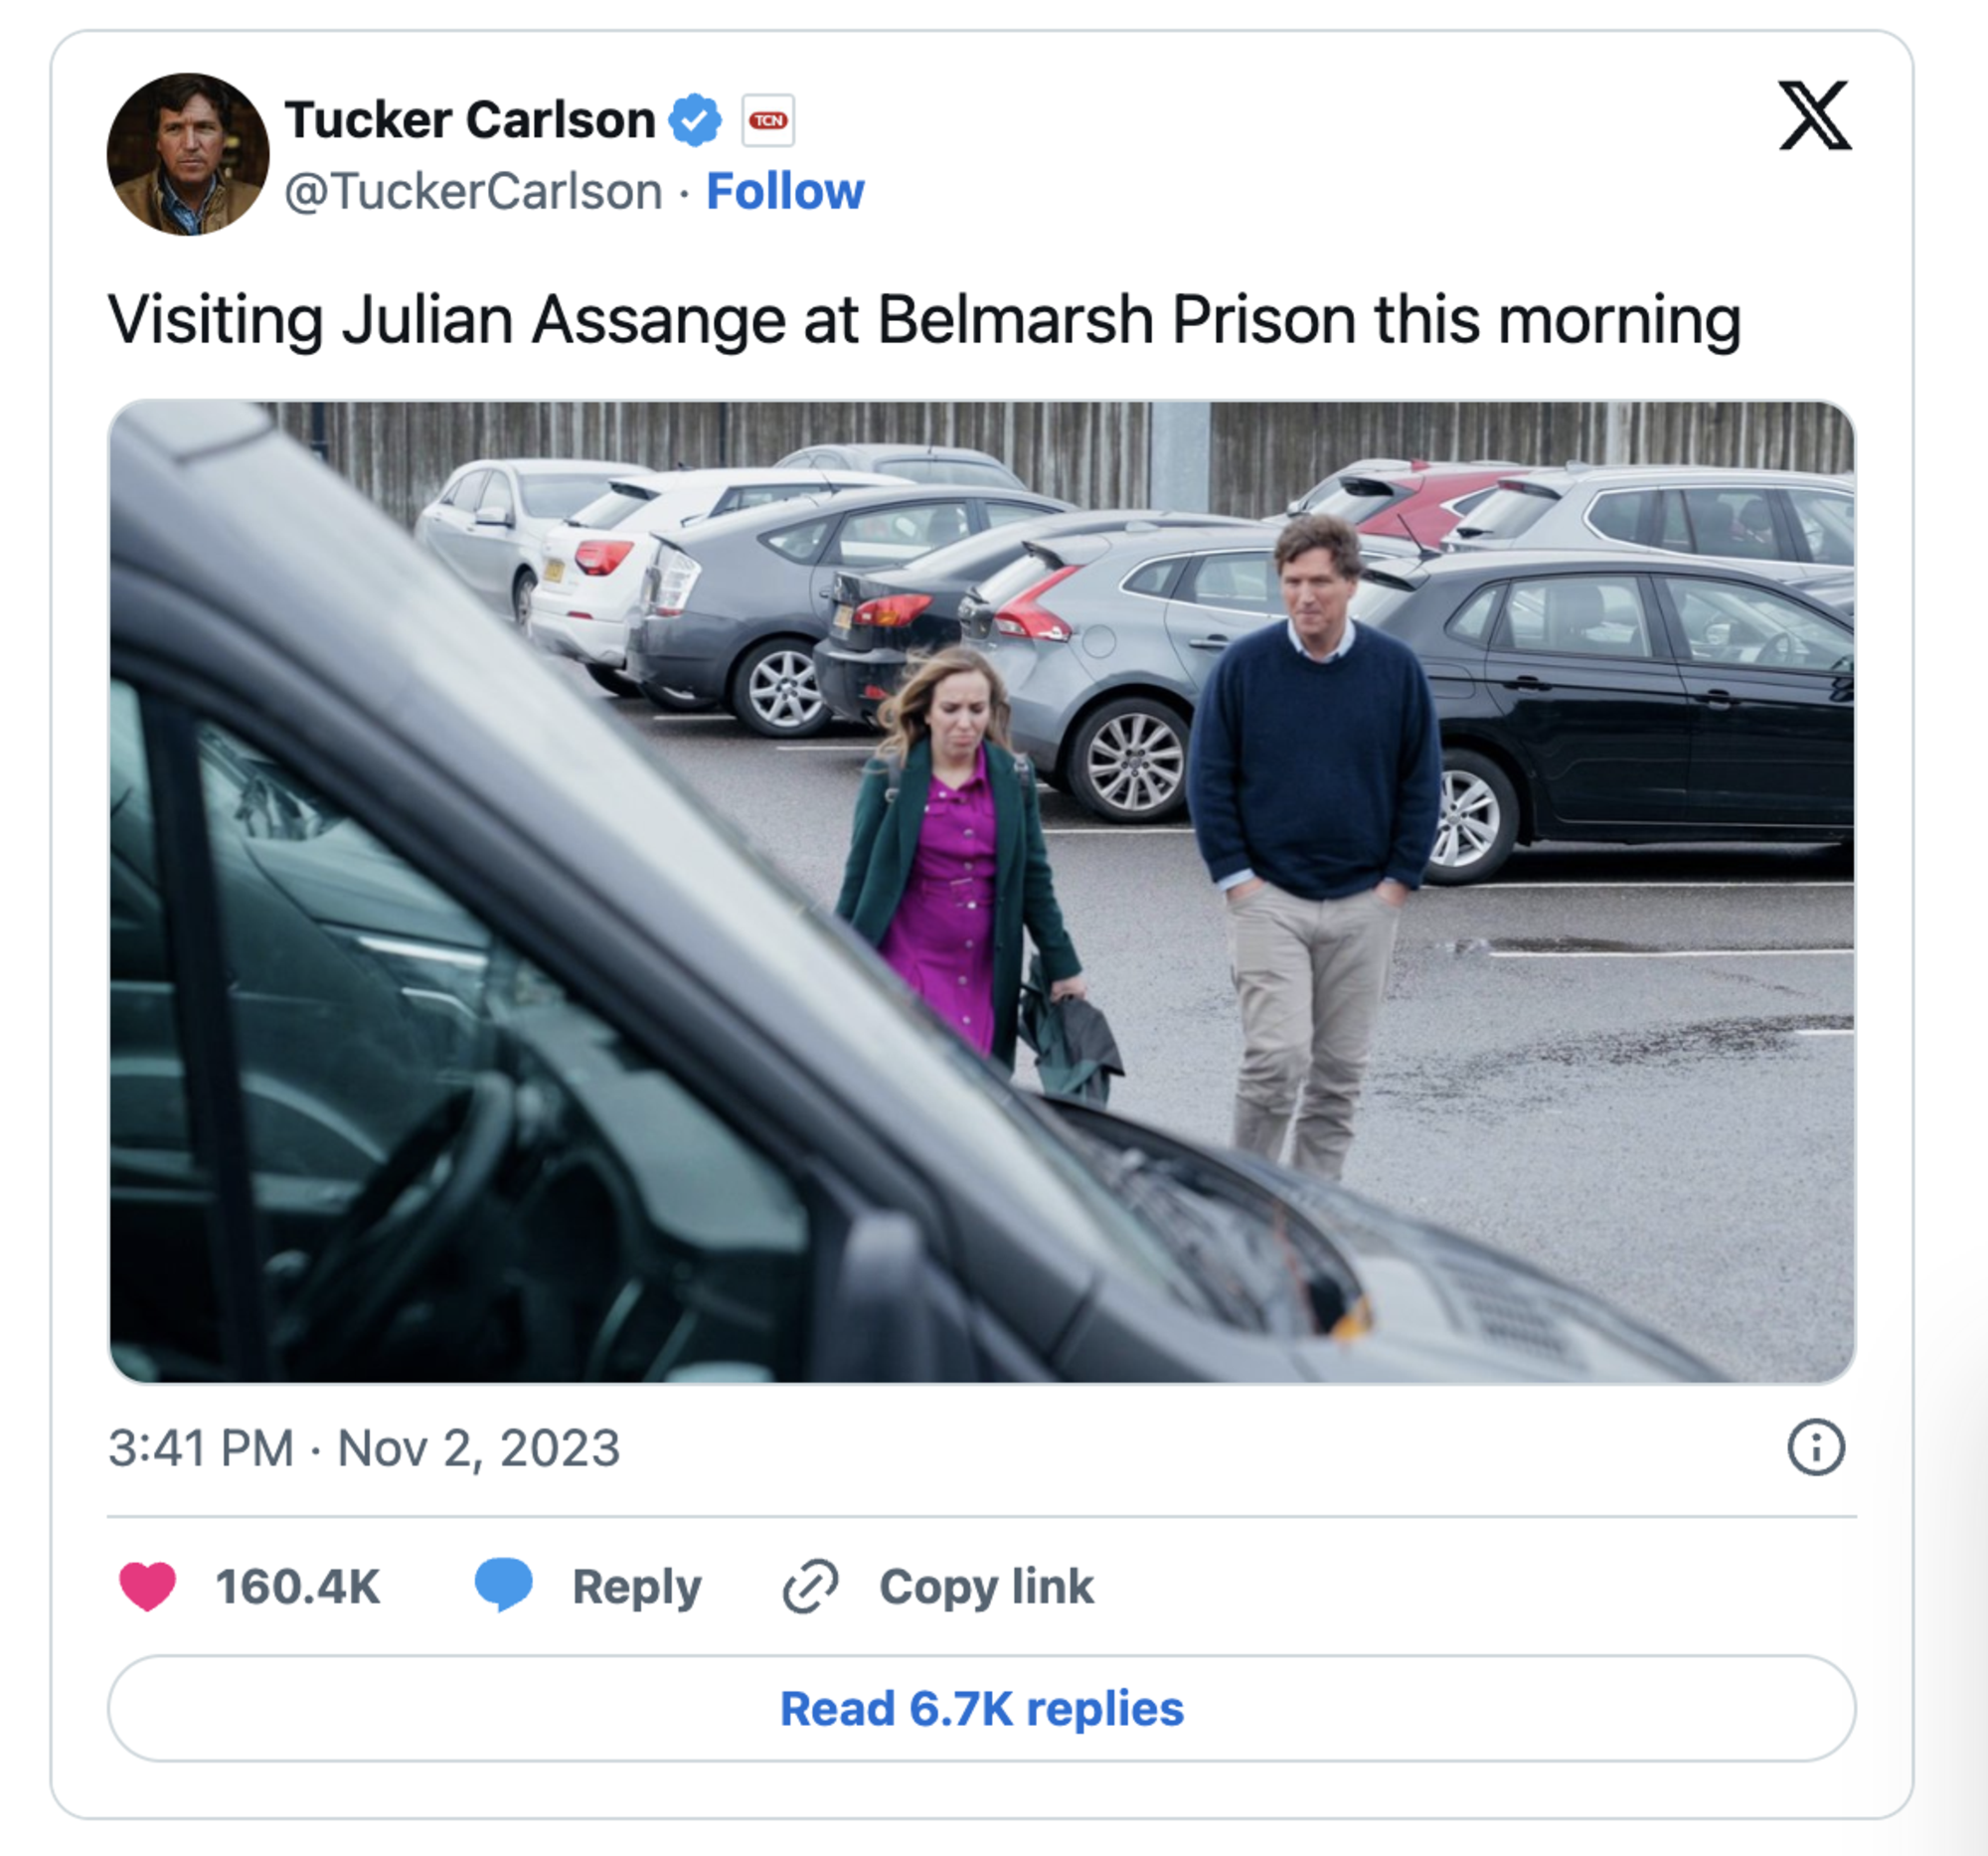 Il tweet di Tucker Carlson sulla visita ad Assange